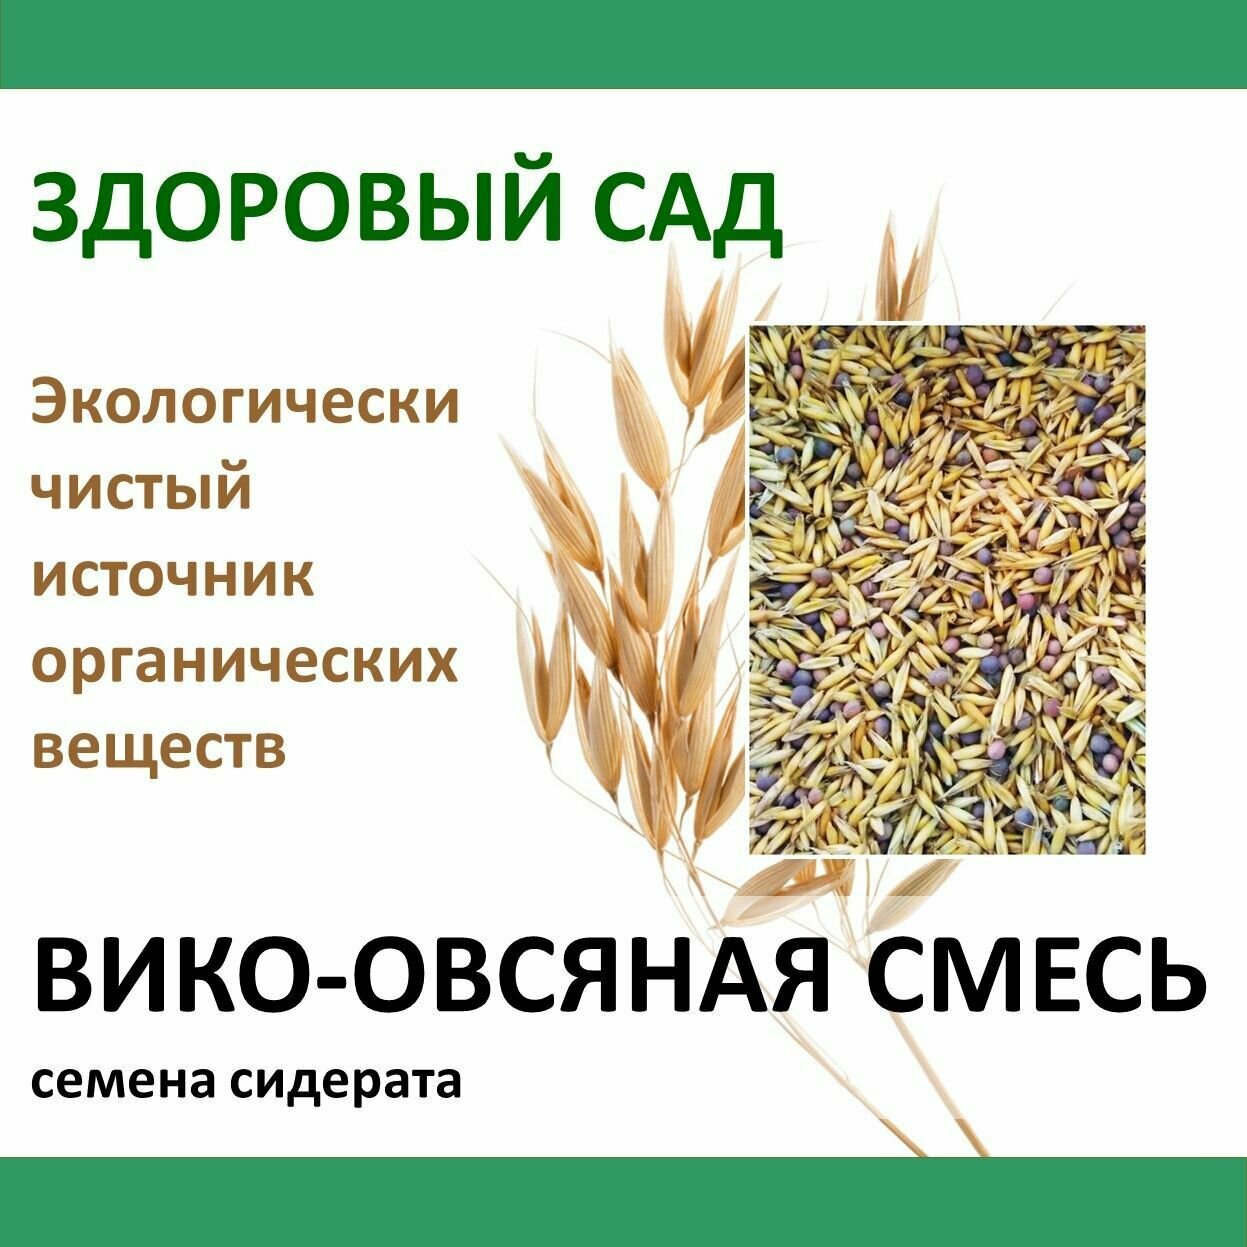 Здоровый САД Семена сидерата Смесь вико-овсяная 04 кг х 15 шт (6 кг)